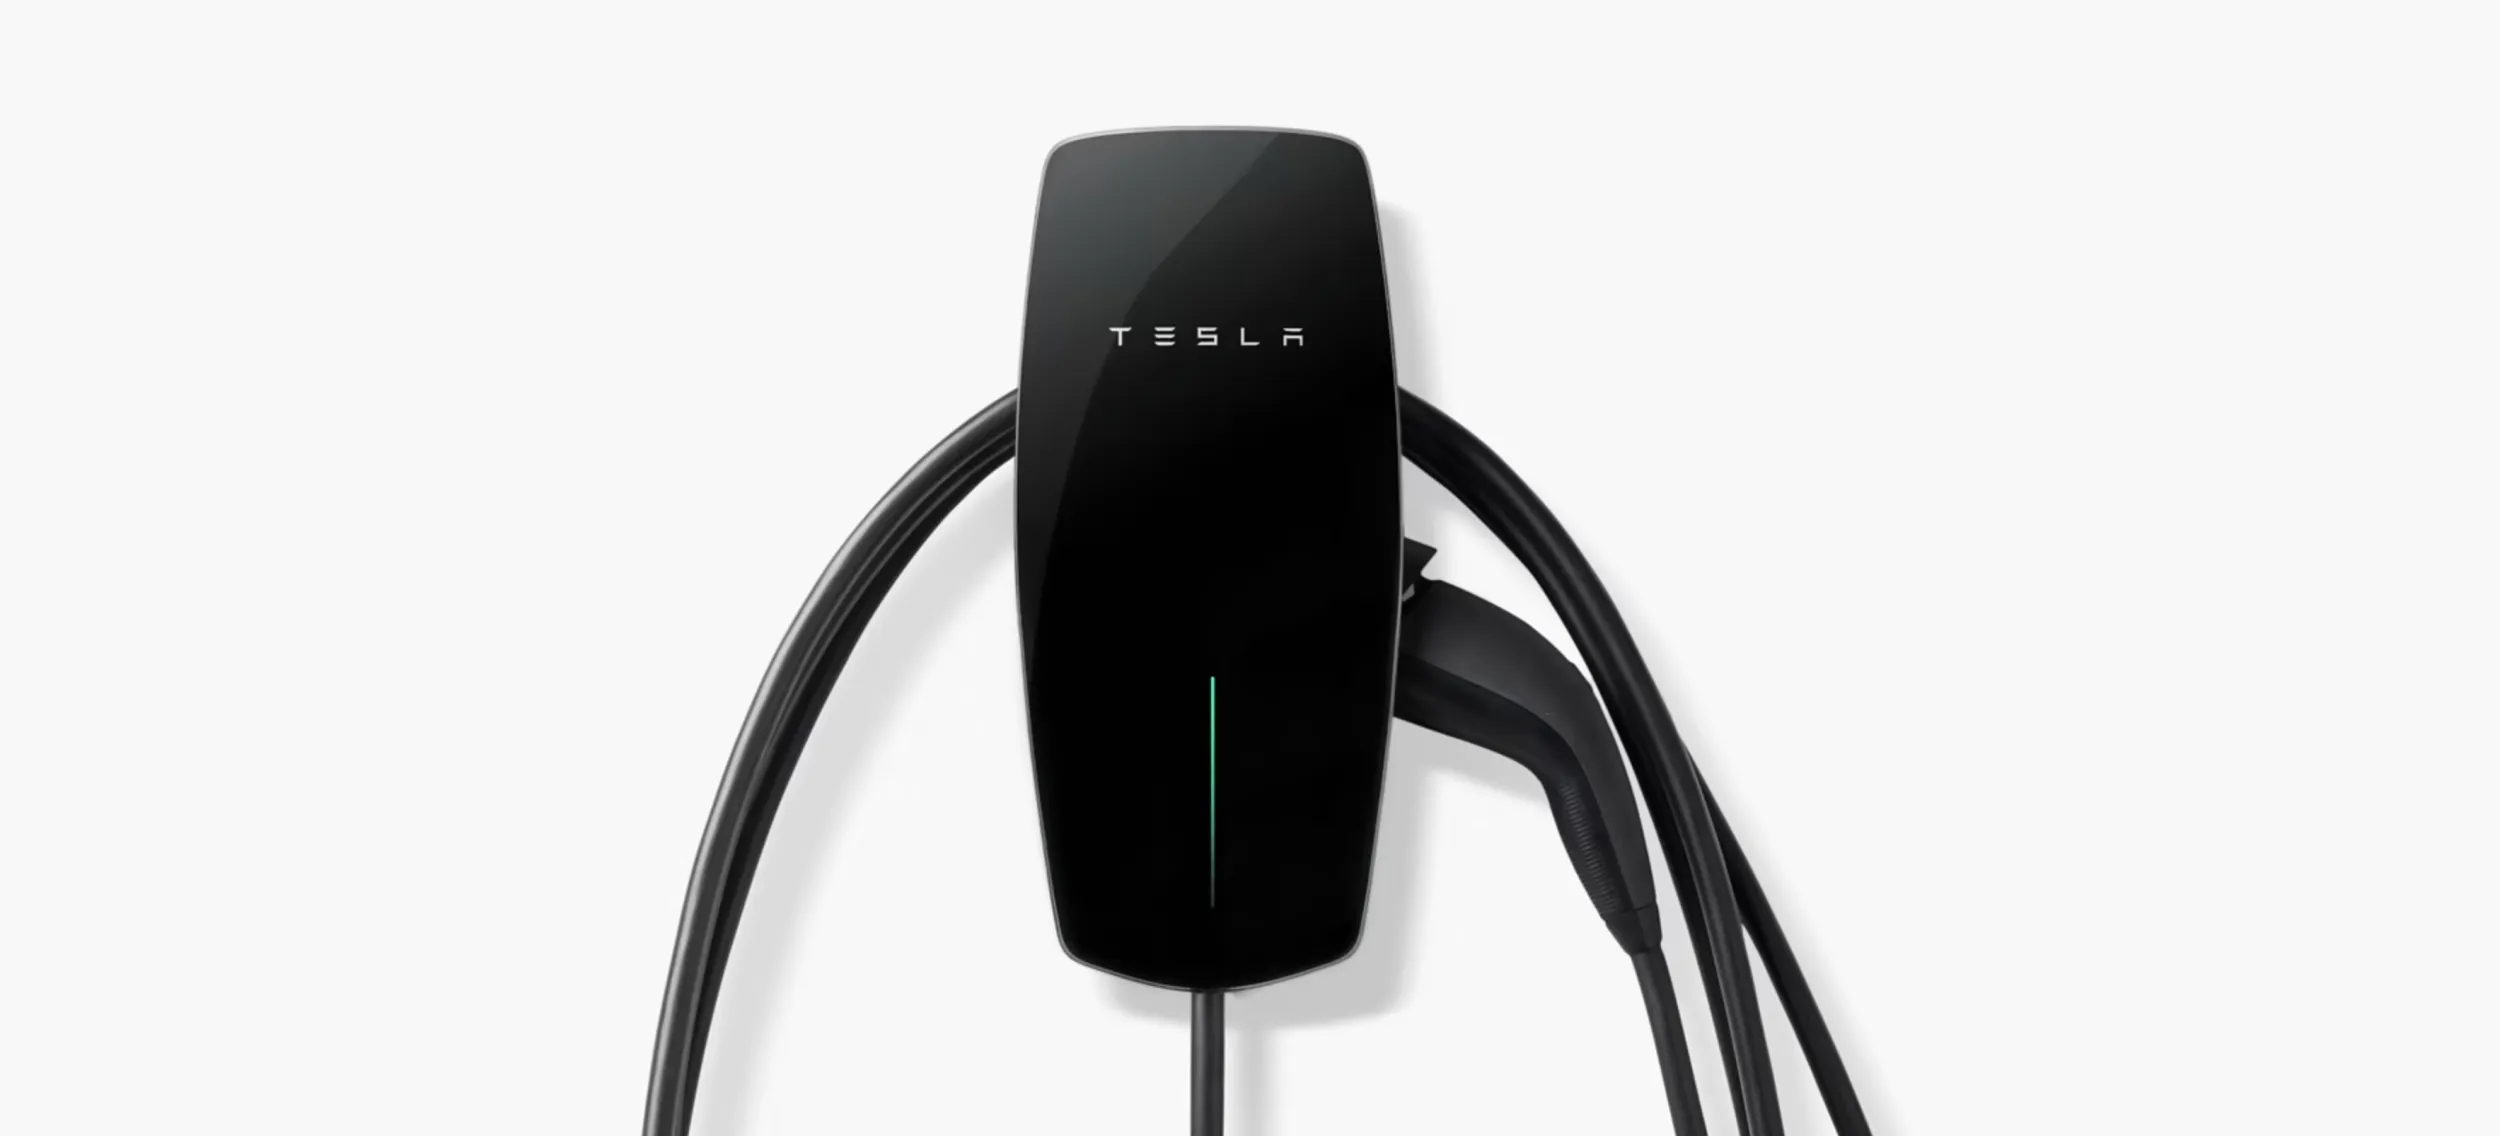 Avis sur le Wallbox Tesla : la dernière génération